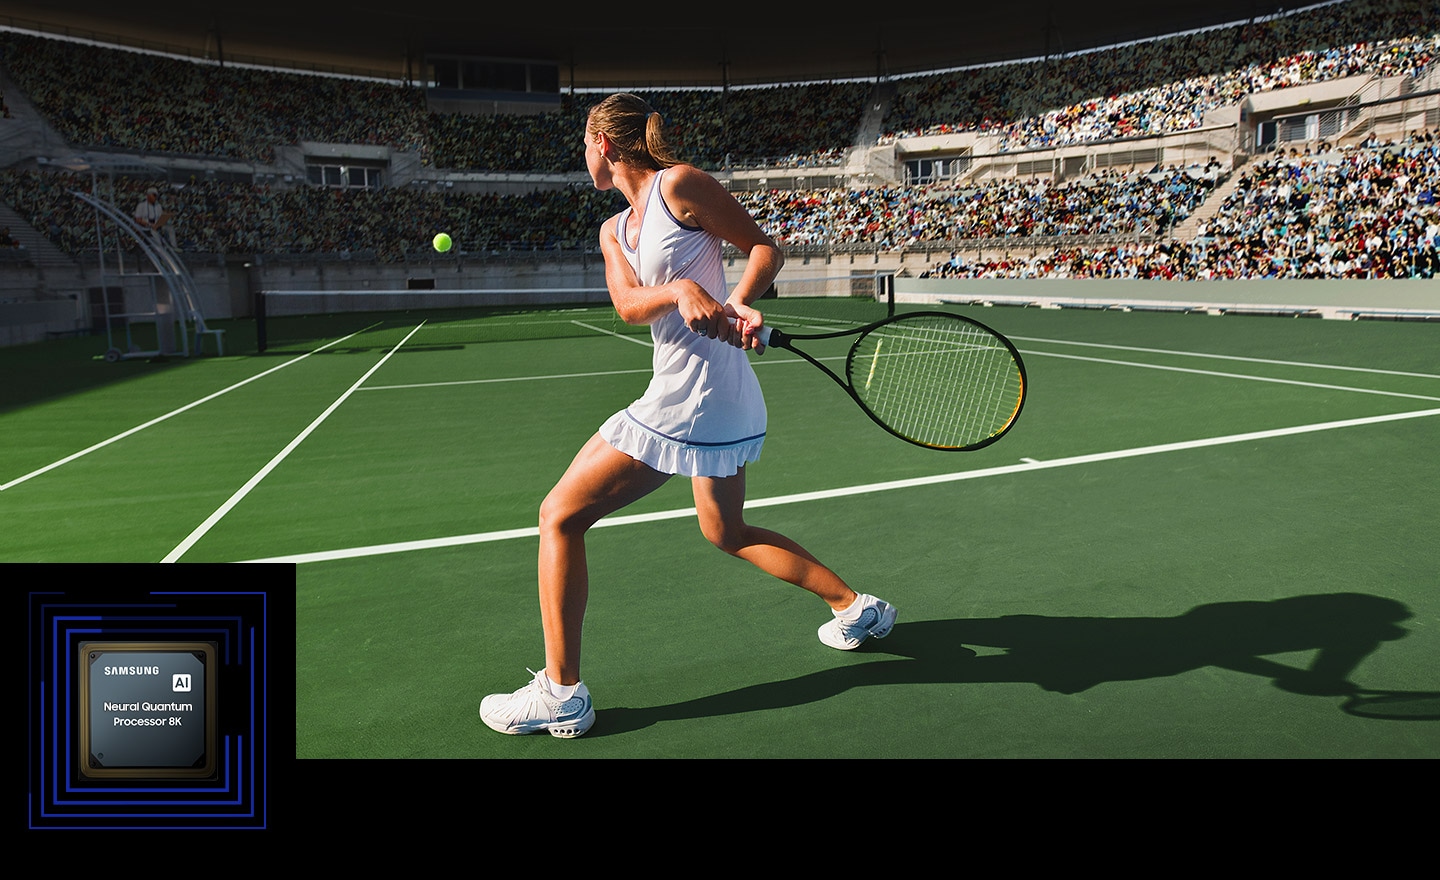  Una donna sta giocando a tennis davanti a una grande folla. Il Neo Quantum Processor 8K è visualizzato nell'angolo in basso a sinistra.